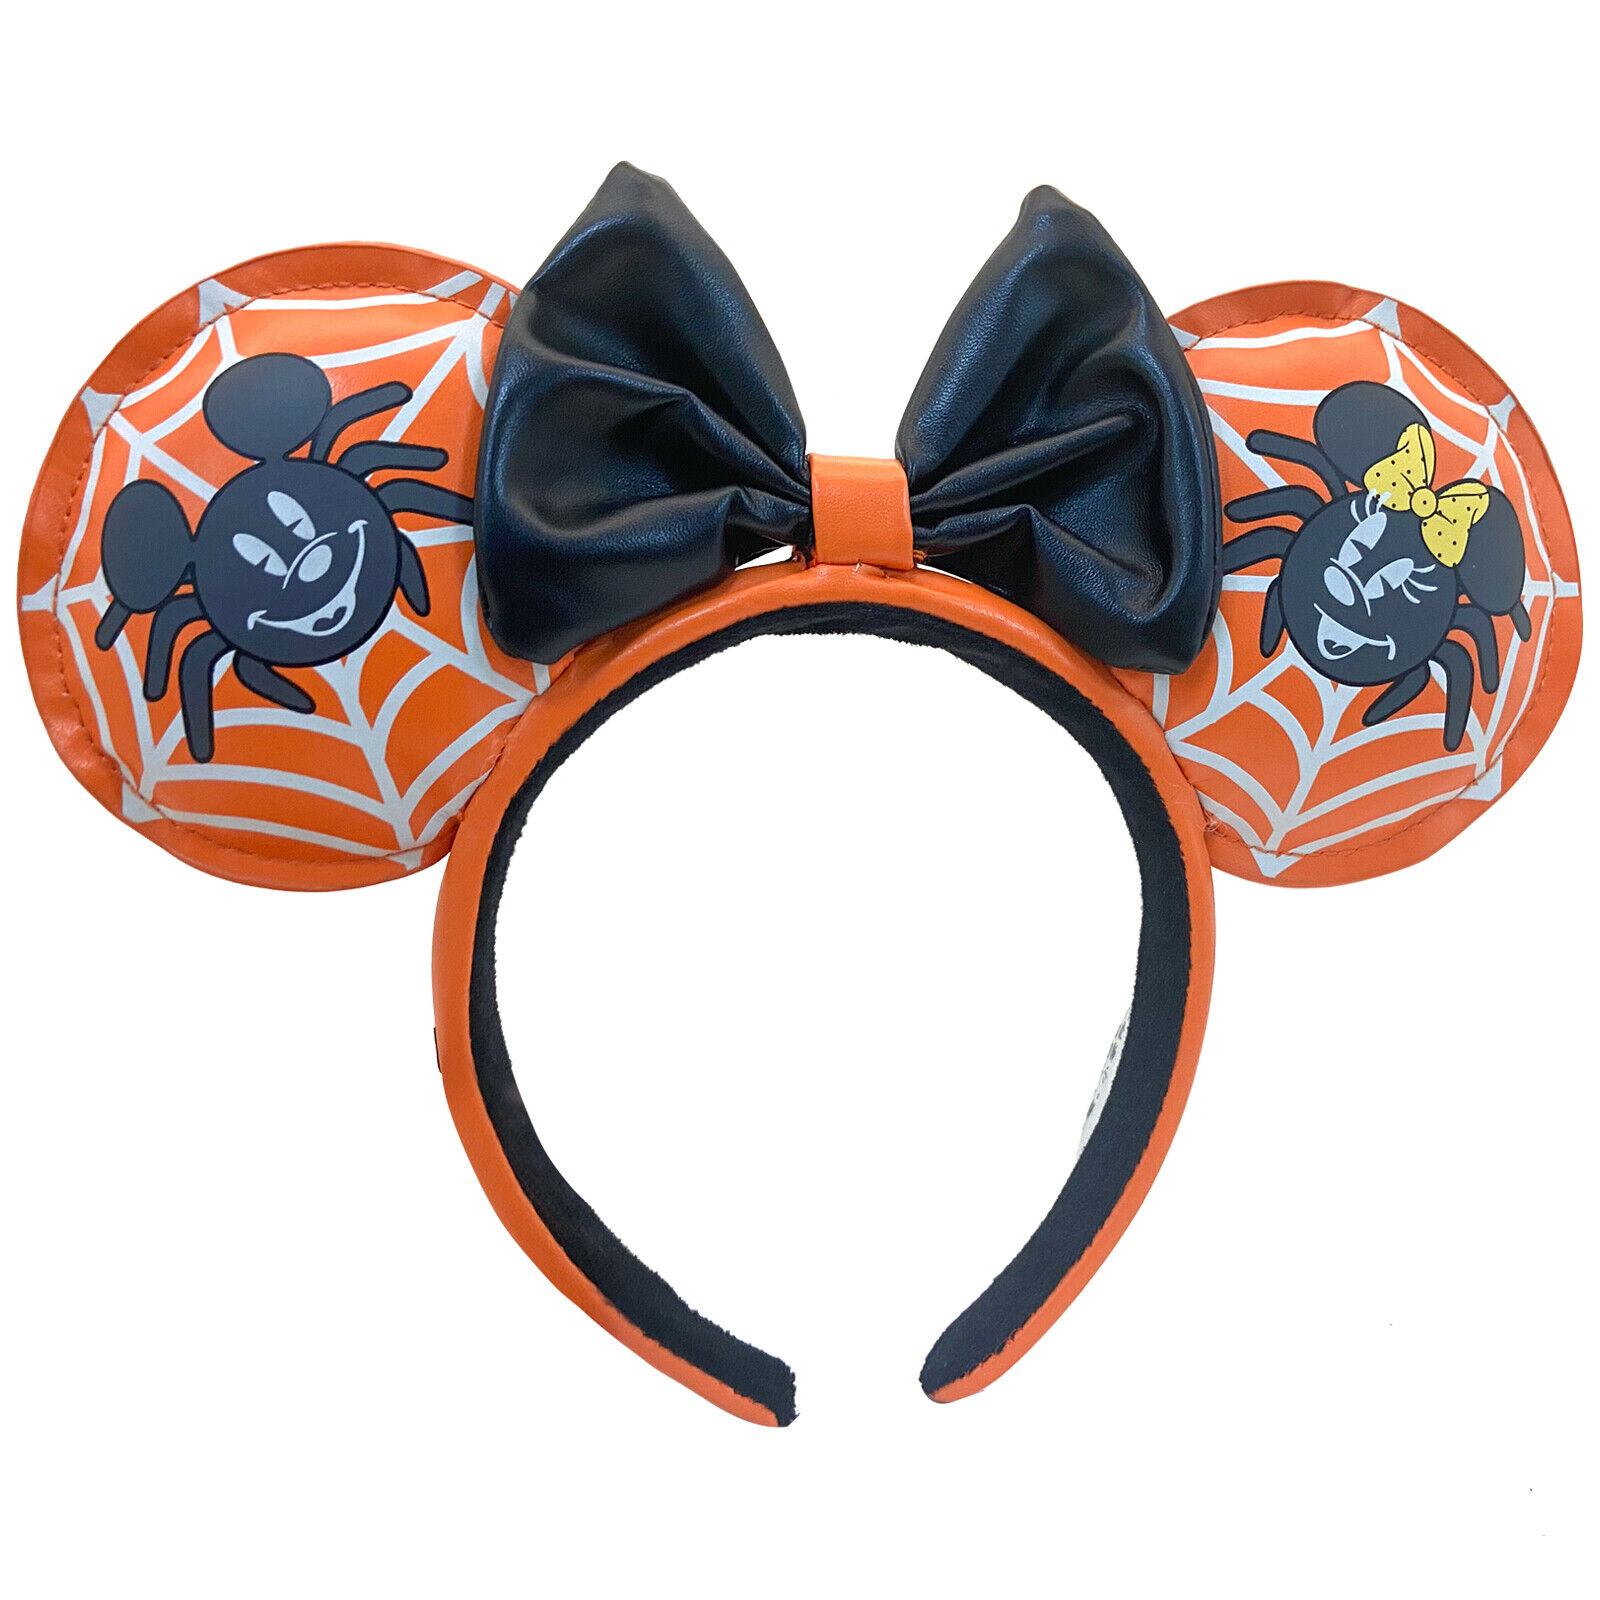 DisneyParks Halloween Christmas Minnie Mouse Bow Black Spider Ears Headband Ears